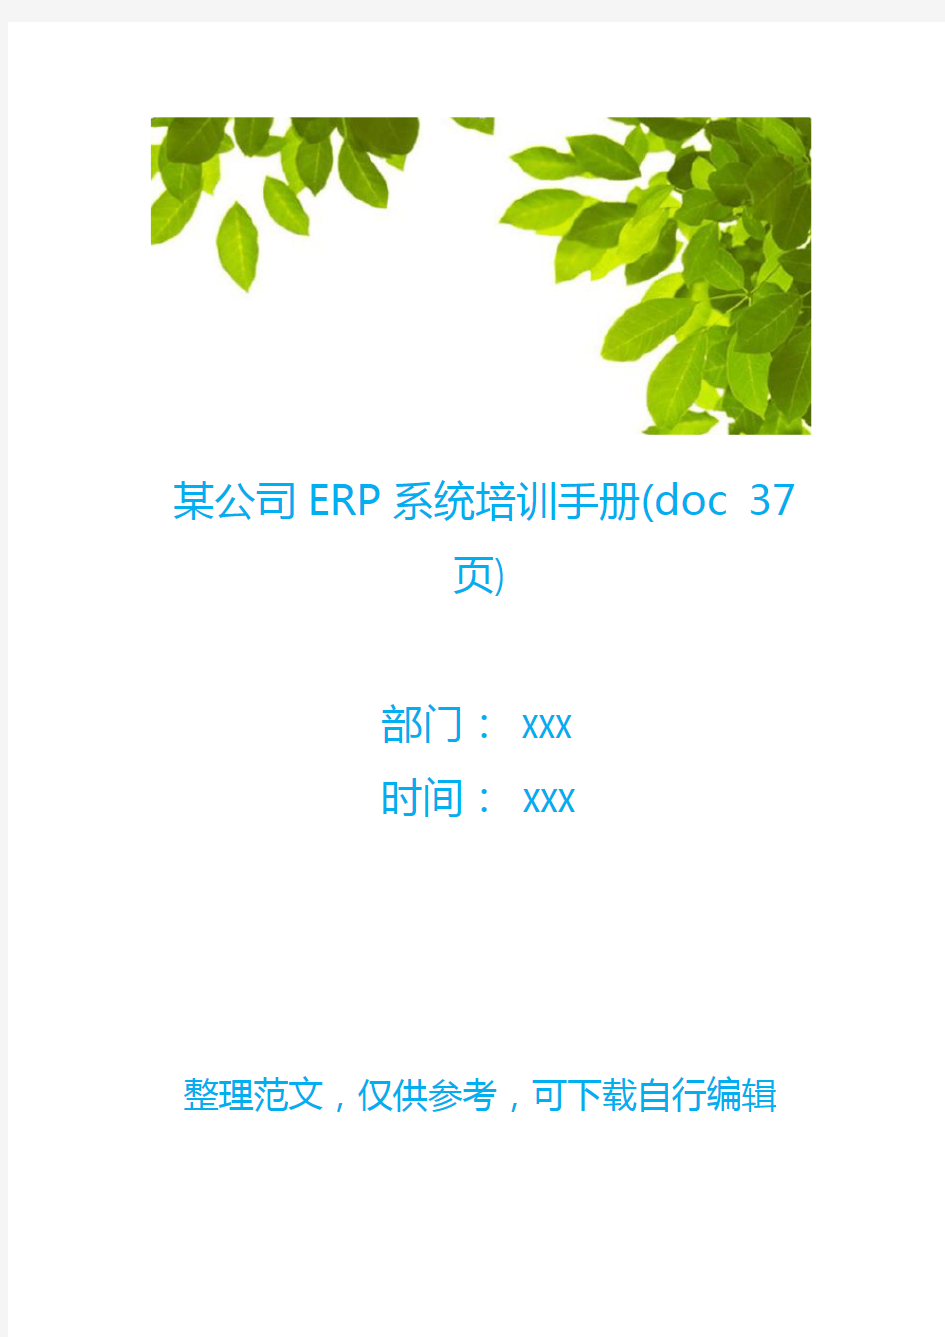 某公司ERP系统培训手册(doc 37页)